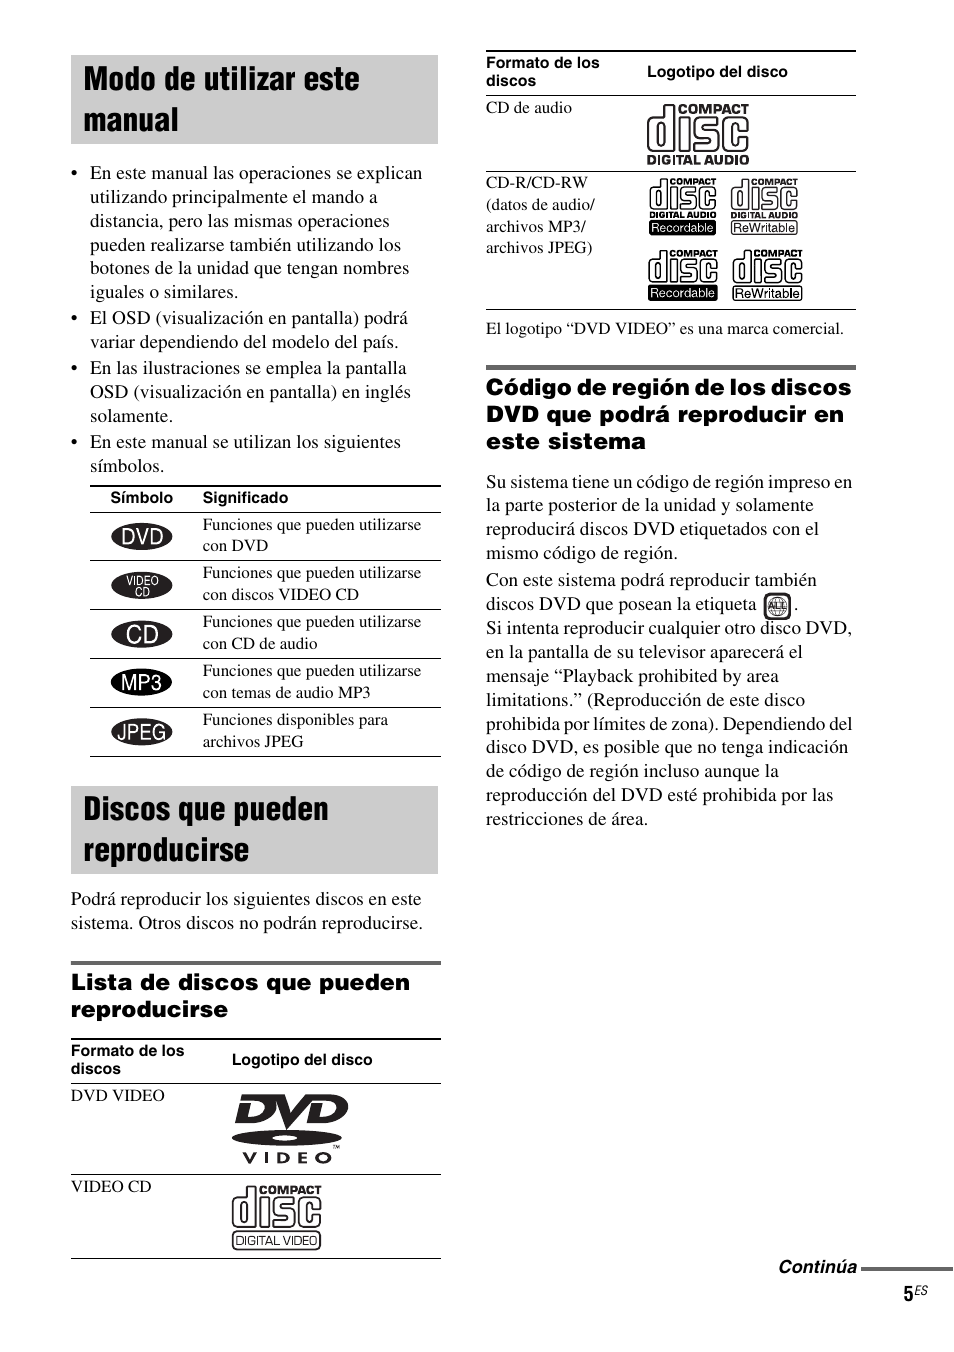 Modo de utilizar este manual, Discos que pueden reproducirse, Lista de discos que pueden reproducirse | Sony CMT-SV2D Manual del usuario | Página 61 / 116